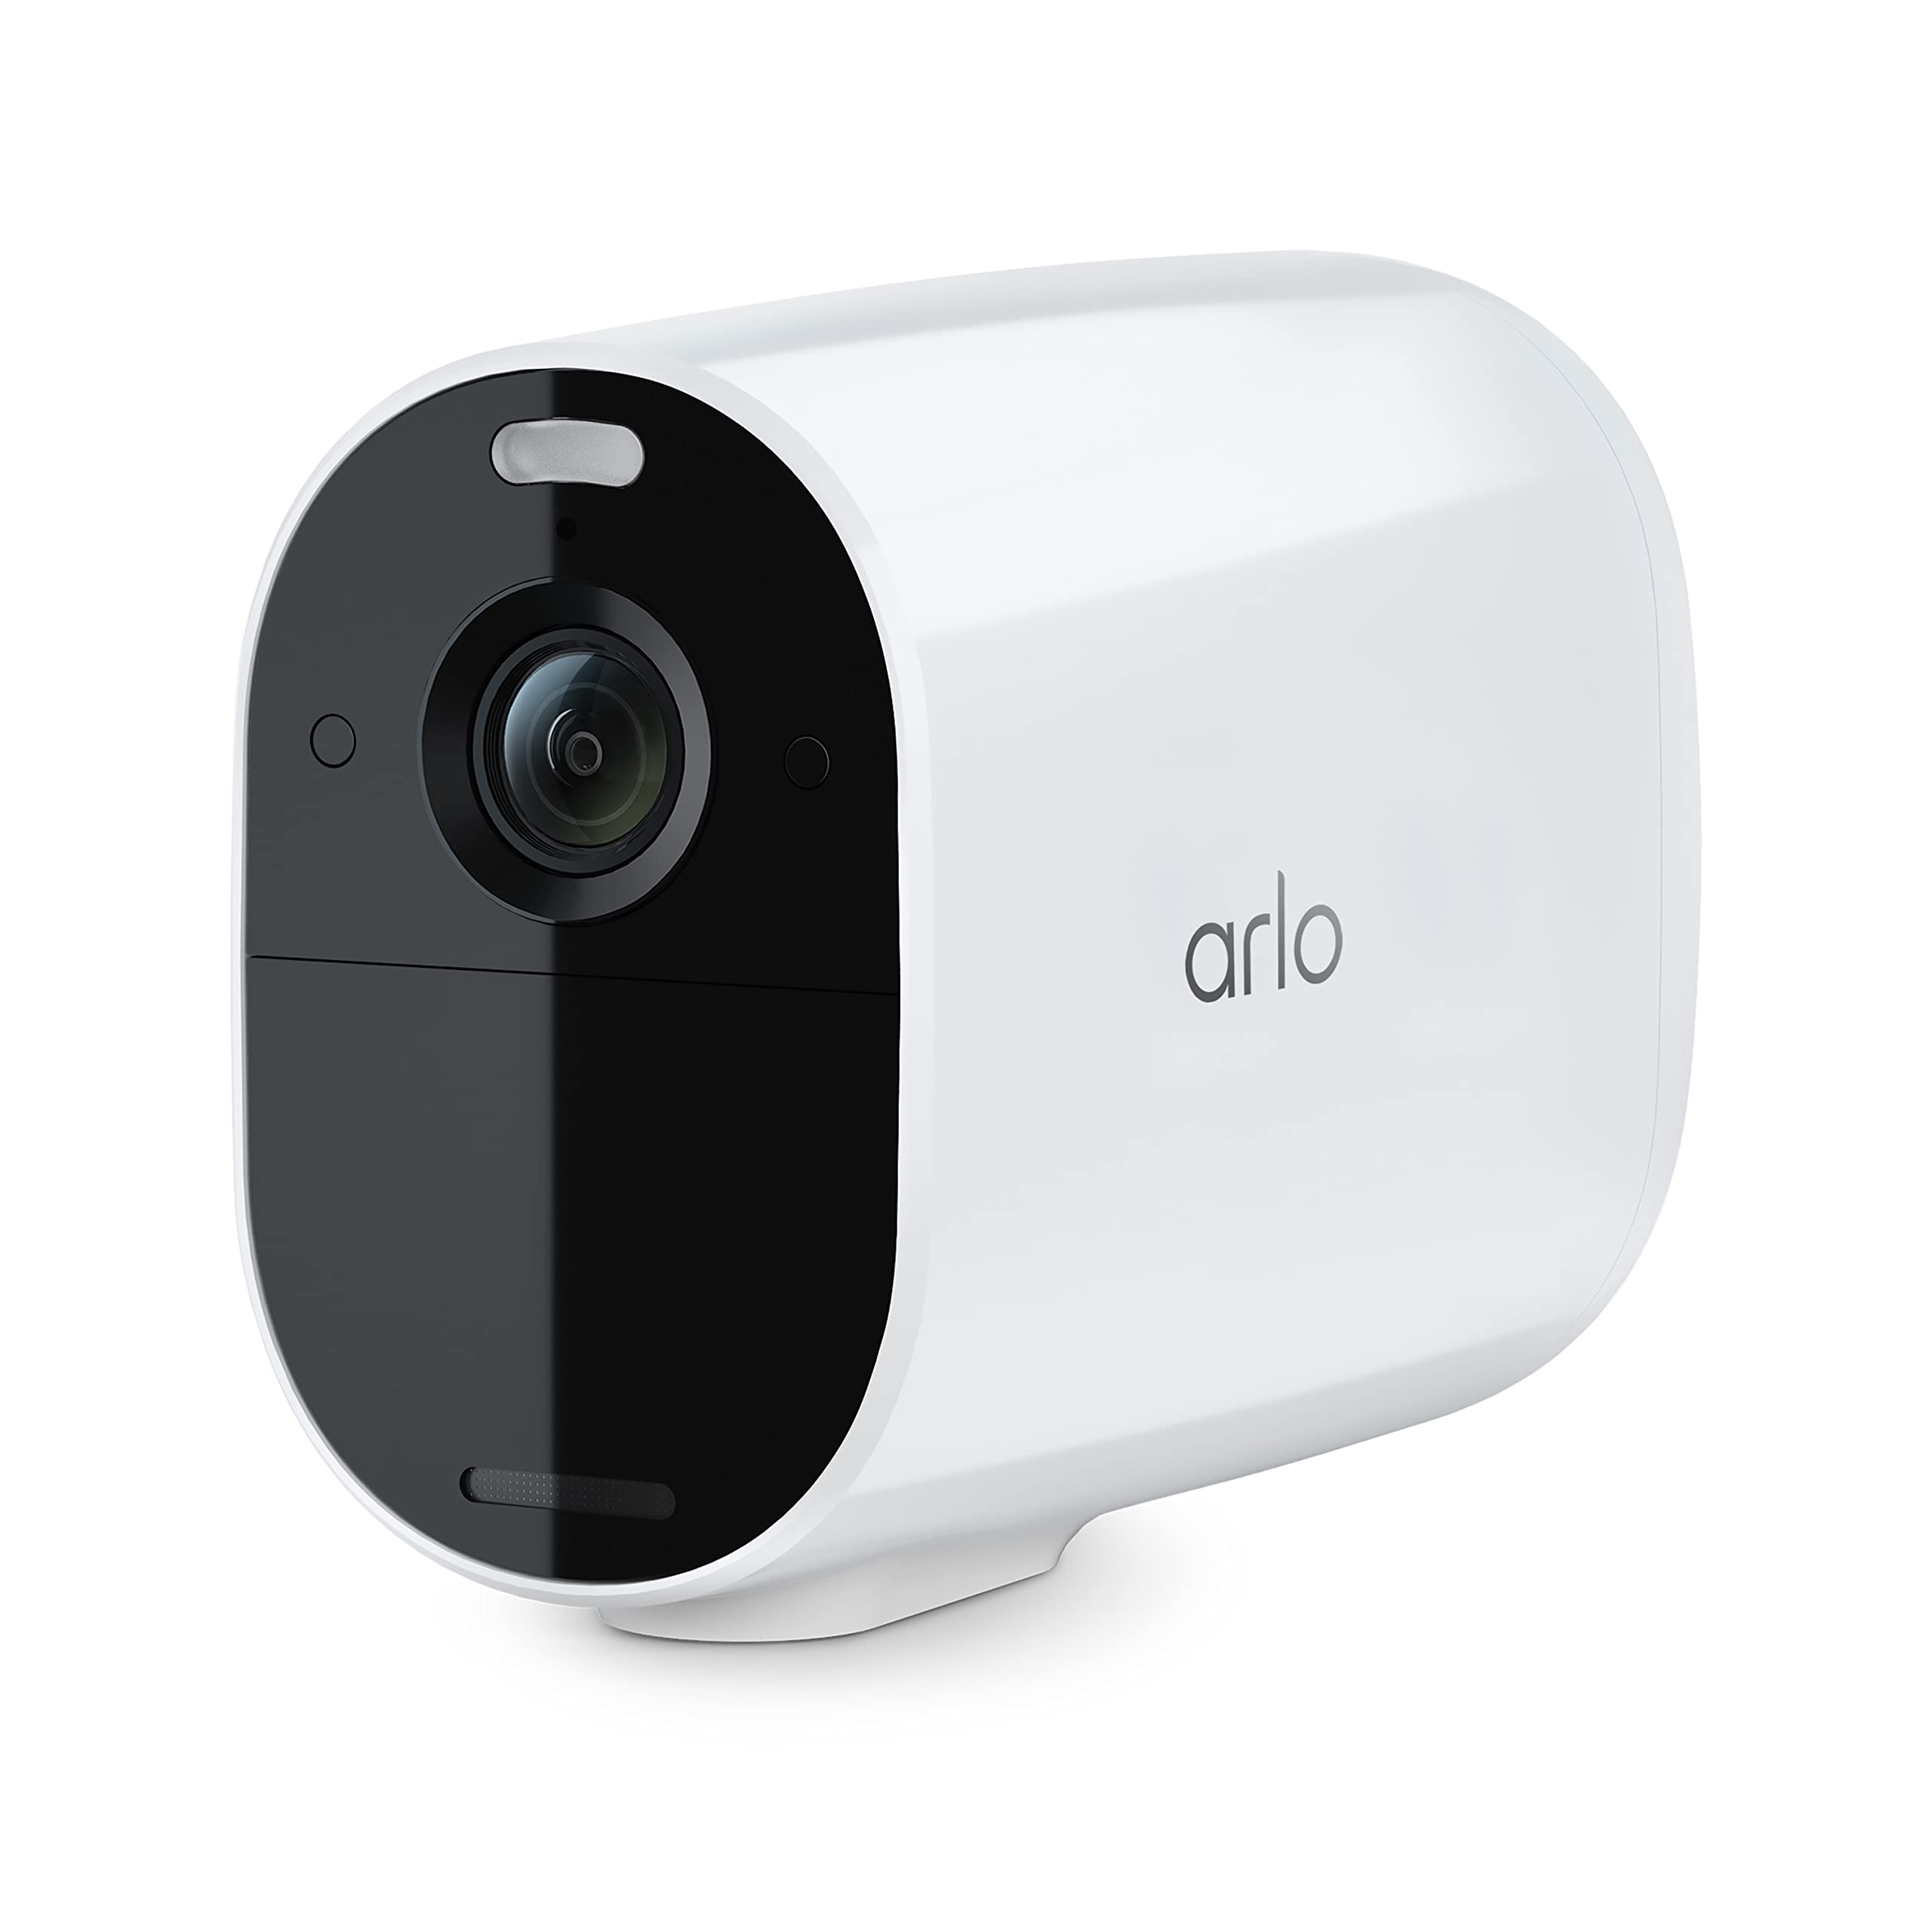 Muốn giữ an ninh an toàn cho ngôi nhà của bạn? Hãy xem các hình ảnh liên quan đến camera Arlo - là một giải pháp an ninh thông minh cho gia đình của bạn.